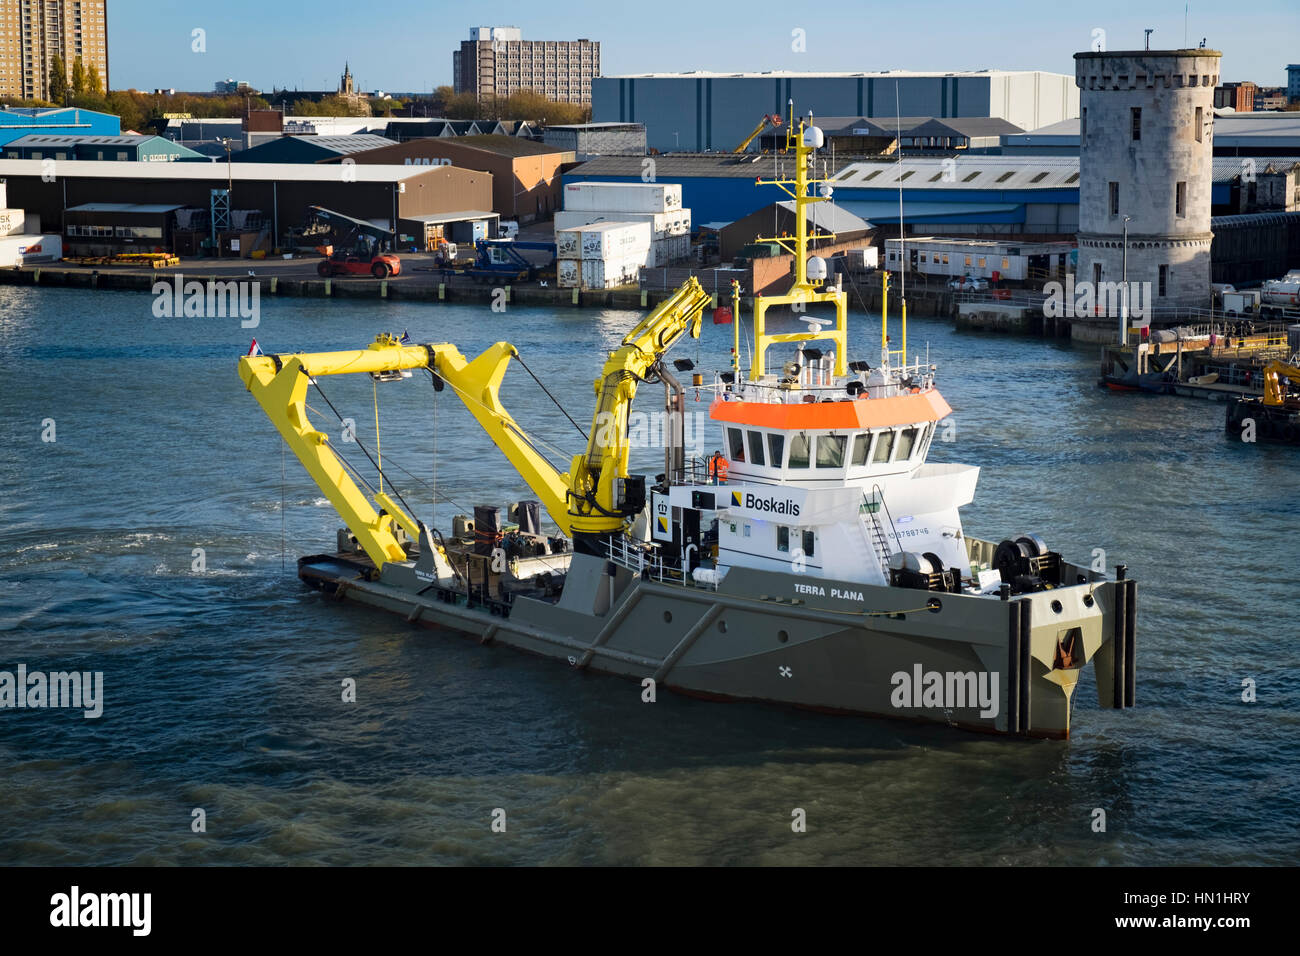 Boskalis dredger boat Terra Plana in Portsmouth Harbpur Stock Photo